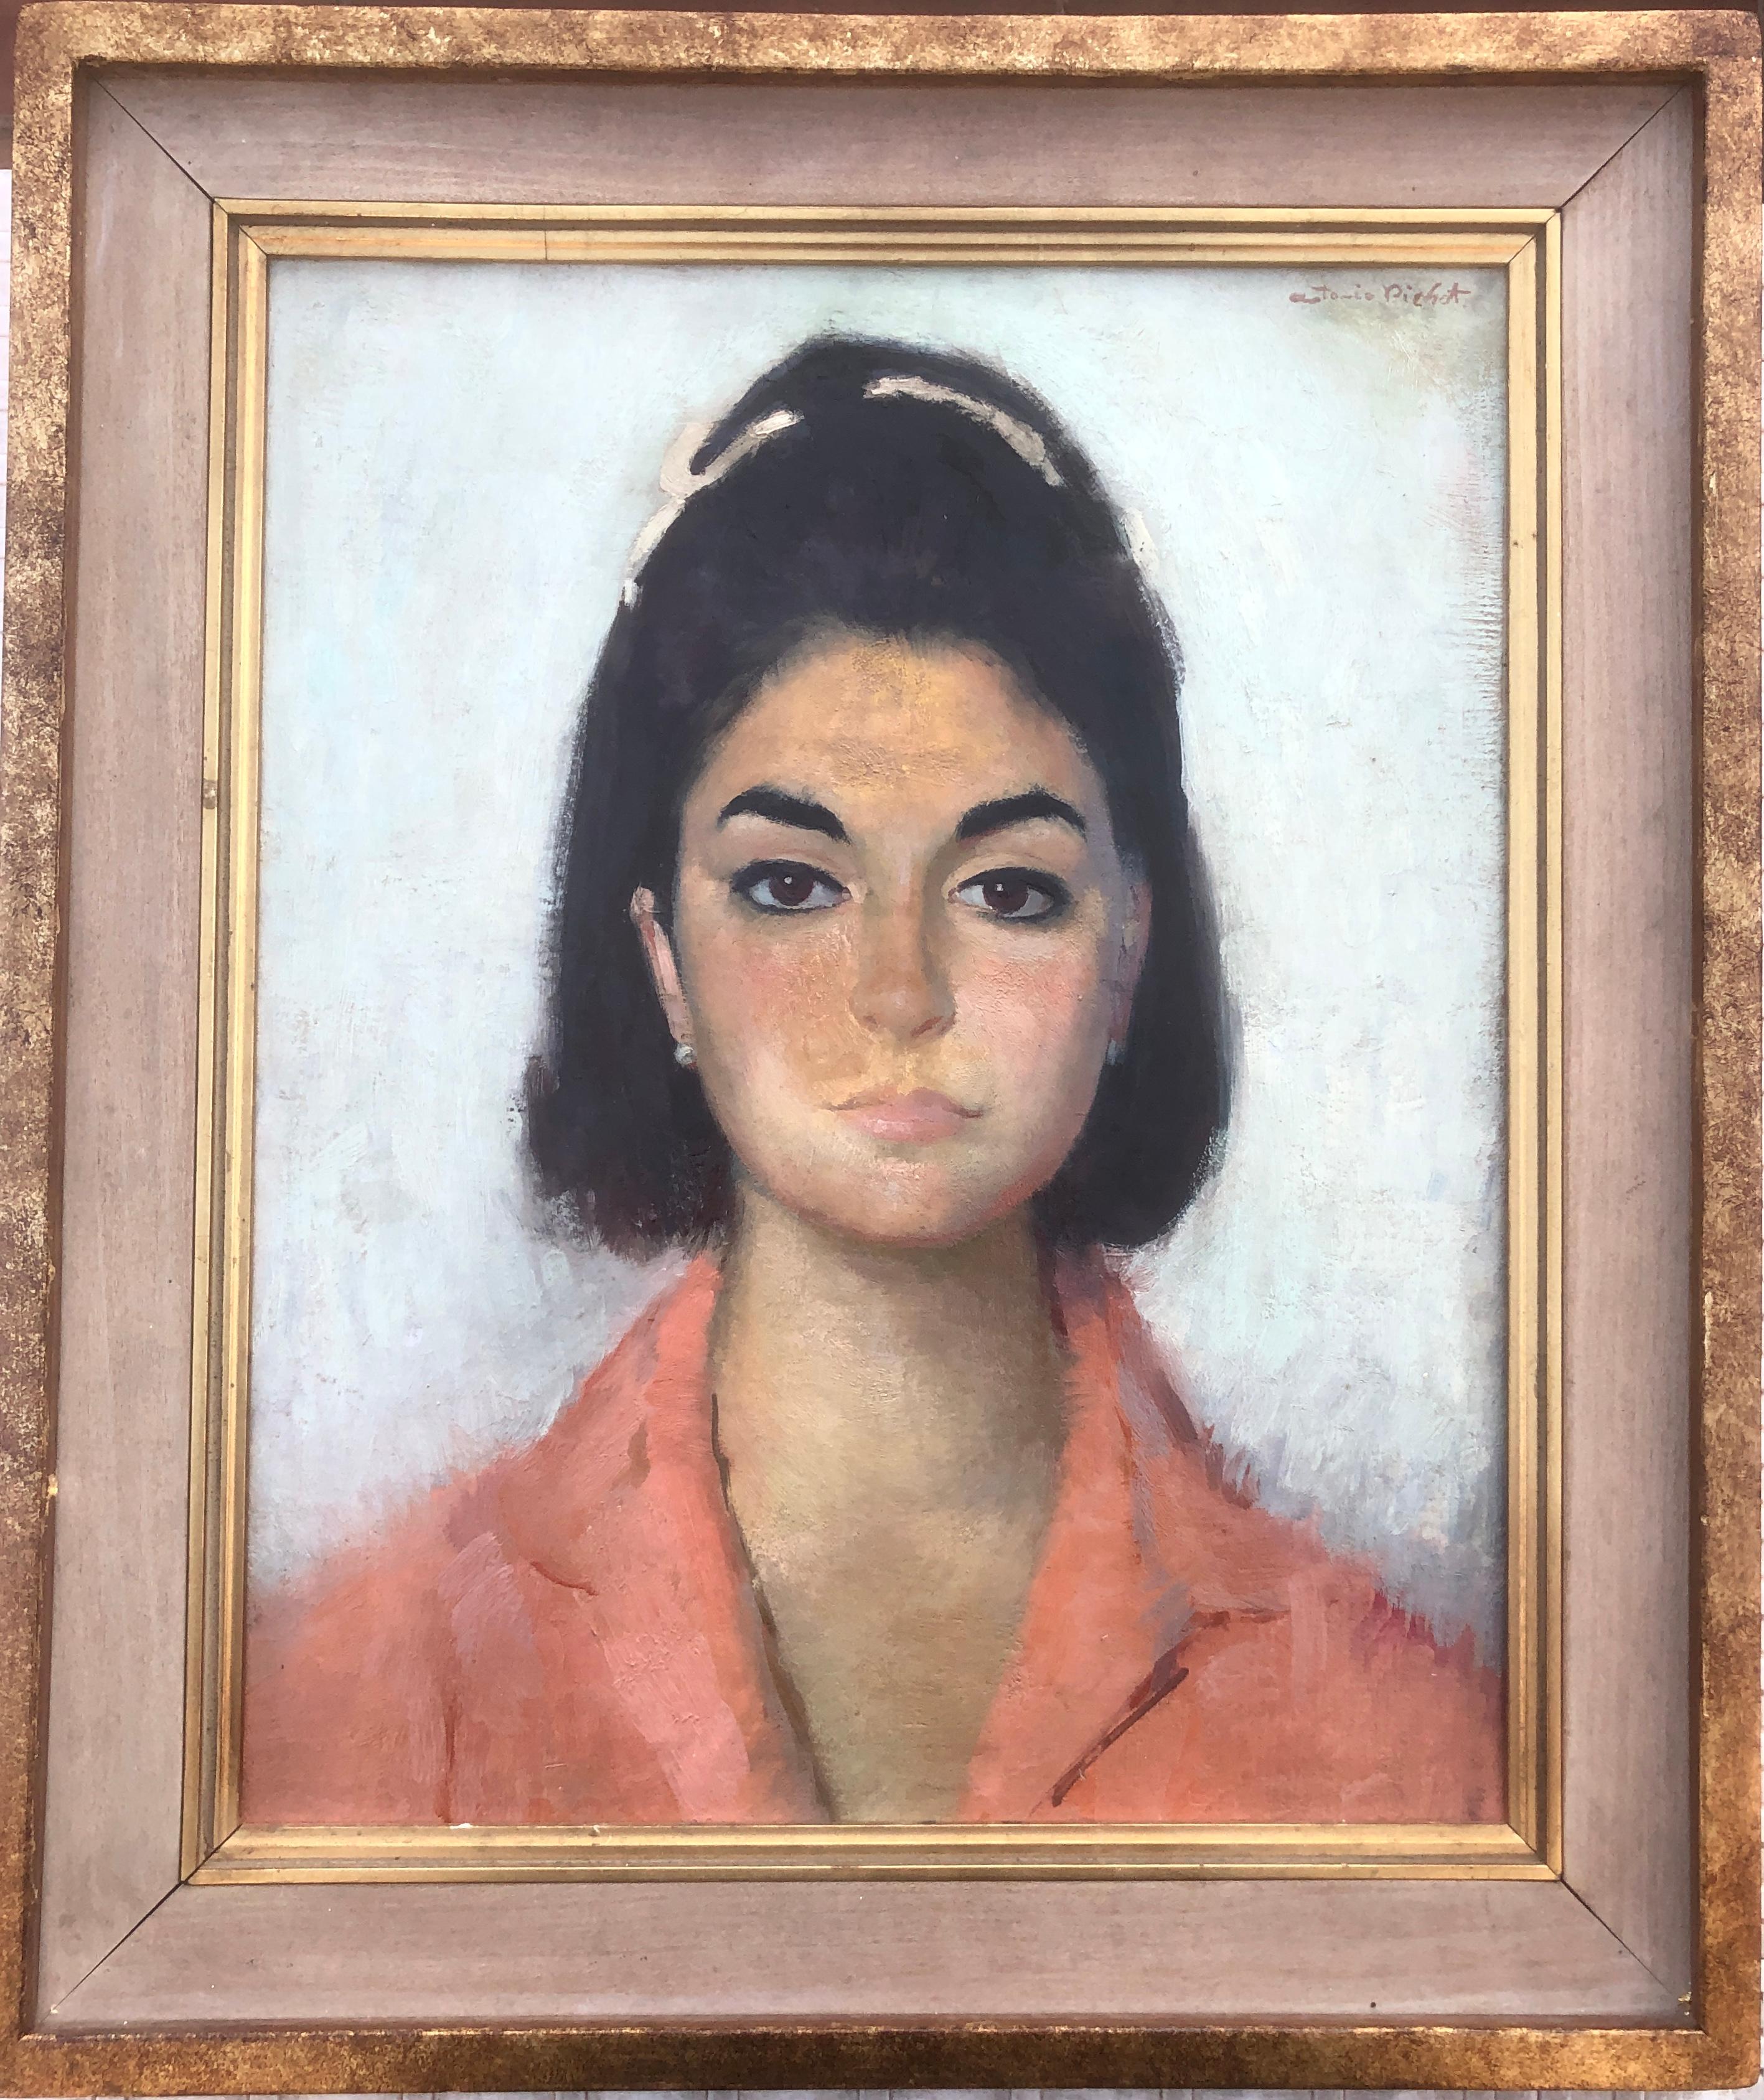 Frauenporträt Öl auf Leinwand Gemälde pitxot – Painting von Antoni Pitxot